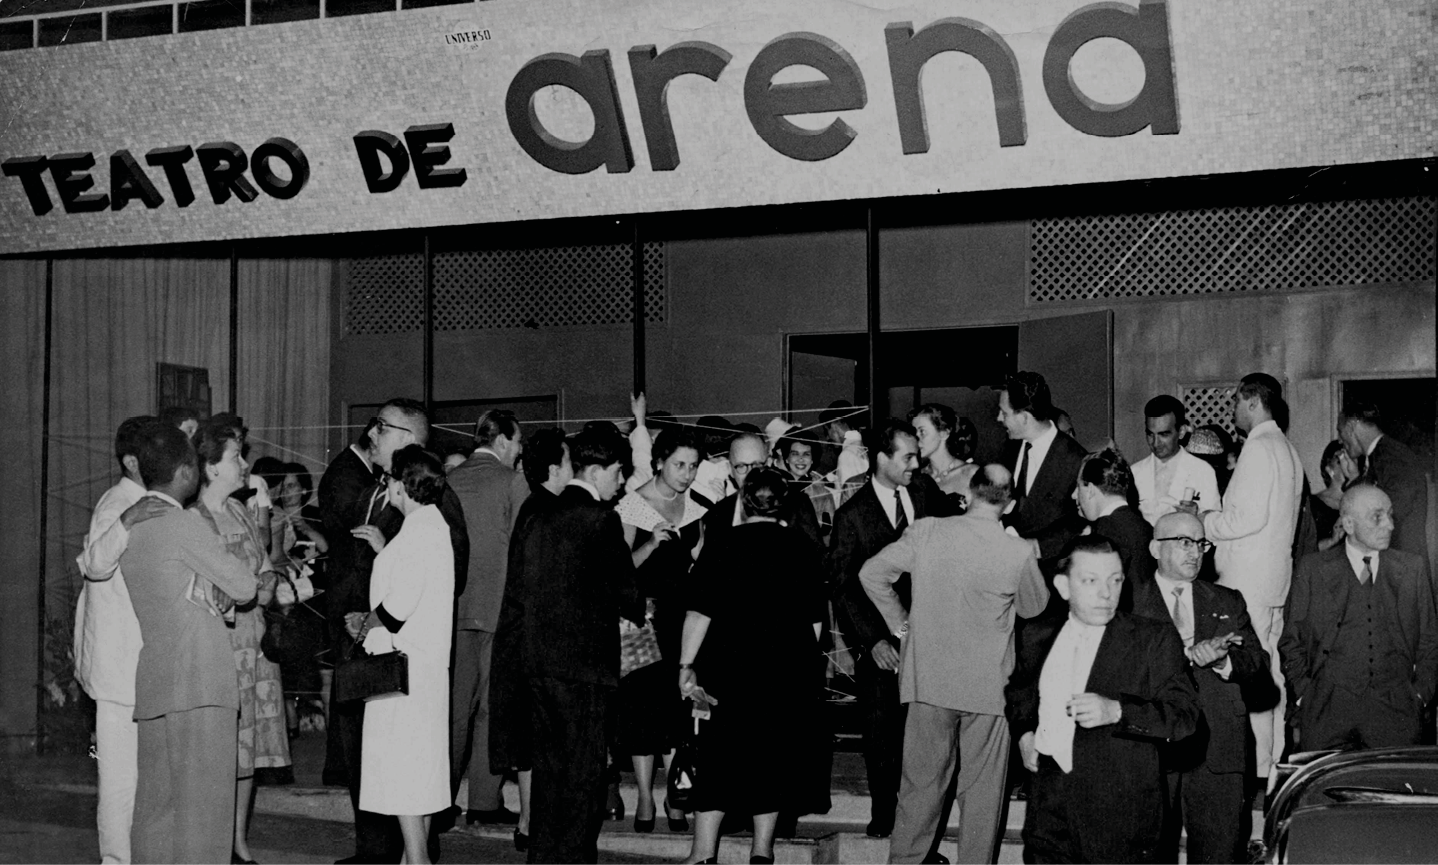 Fotografia em preto e branco. Homens e mulheres reunidos em frente à fachada de um teatro. Na parte superior, o texto: Teatro de Arena.